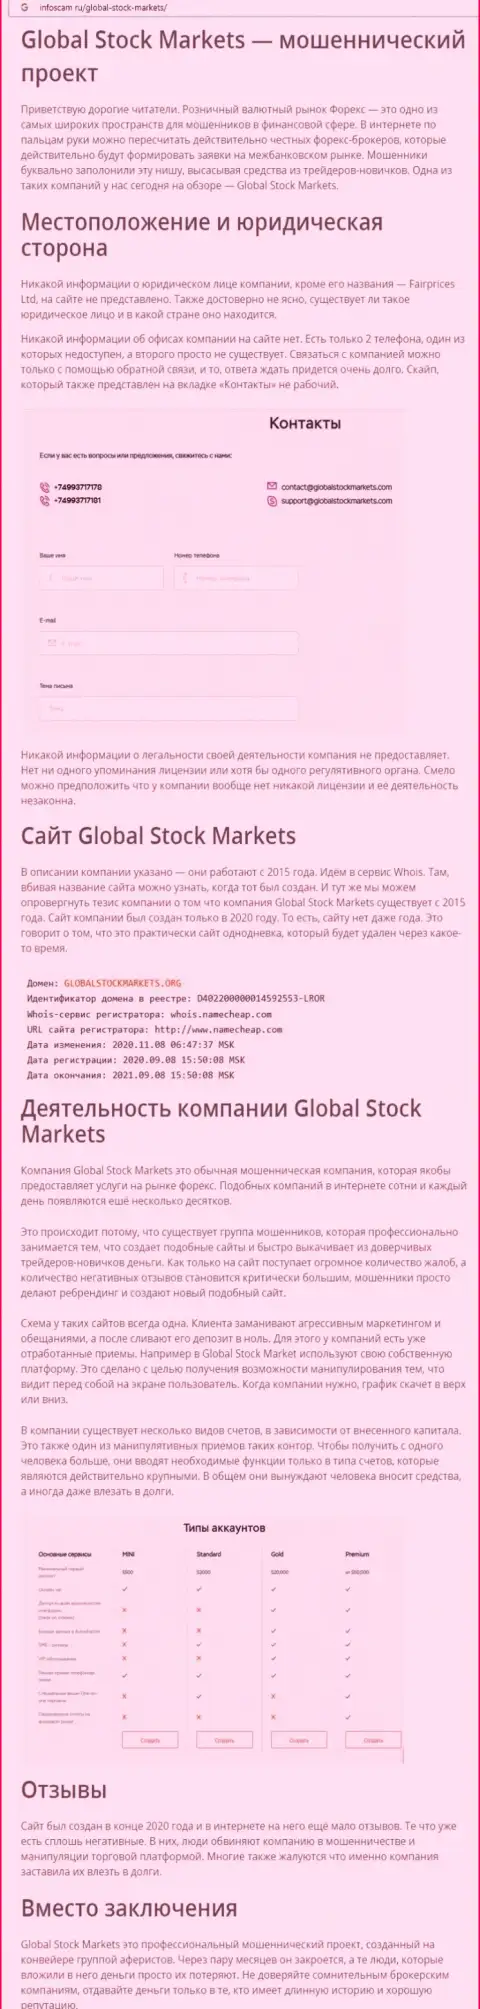 НЕ ОПАСНО ли иметь дело с компанией GlobalStockMarkets Org ??? Обзор манипуляций организации